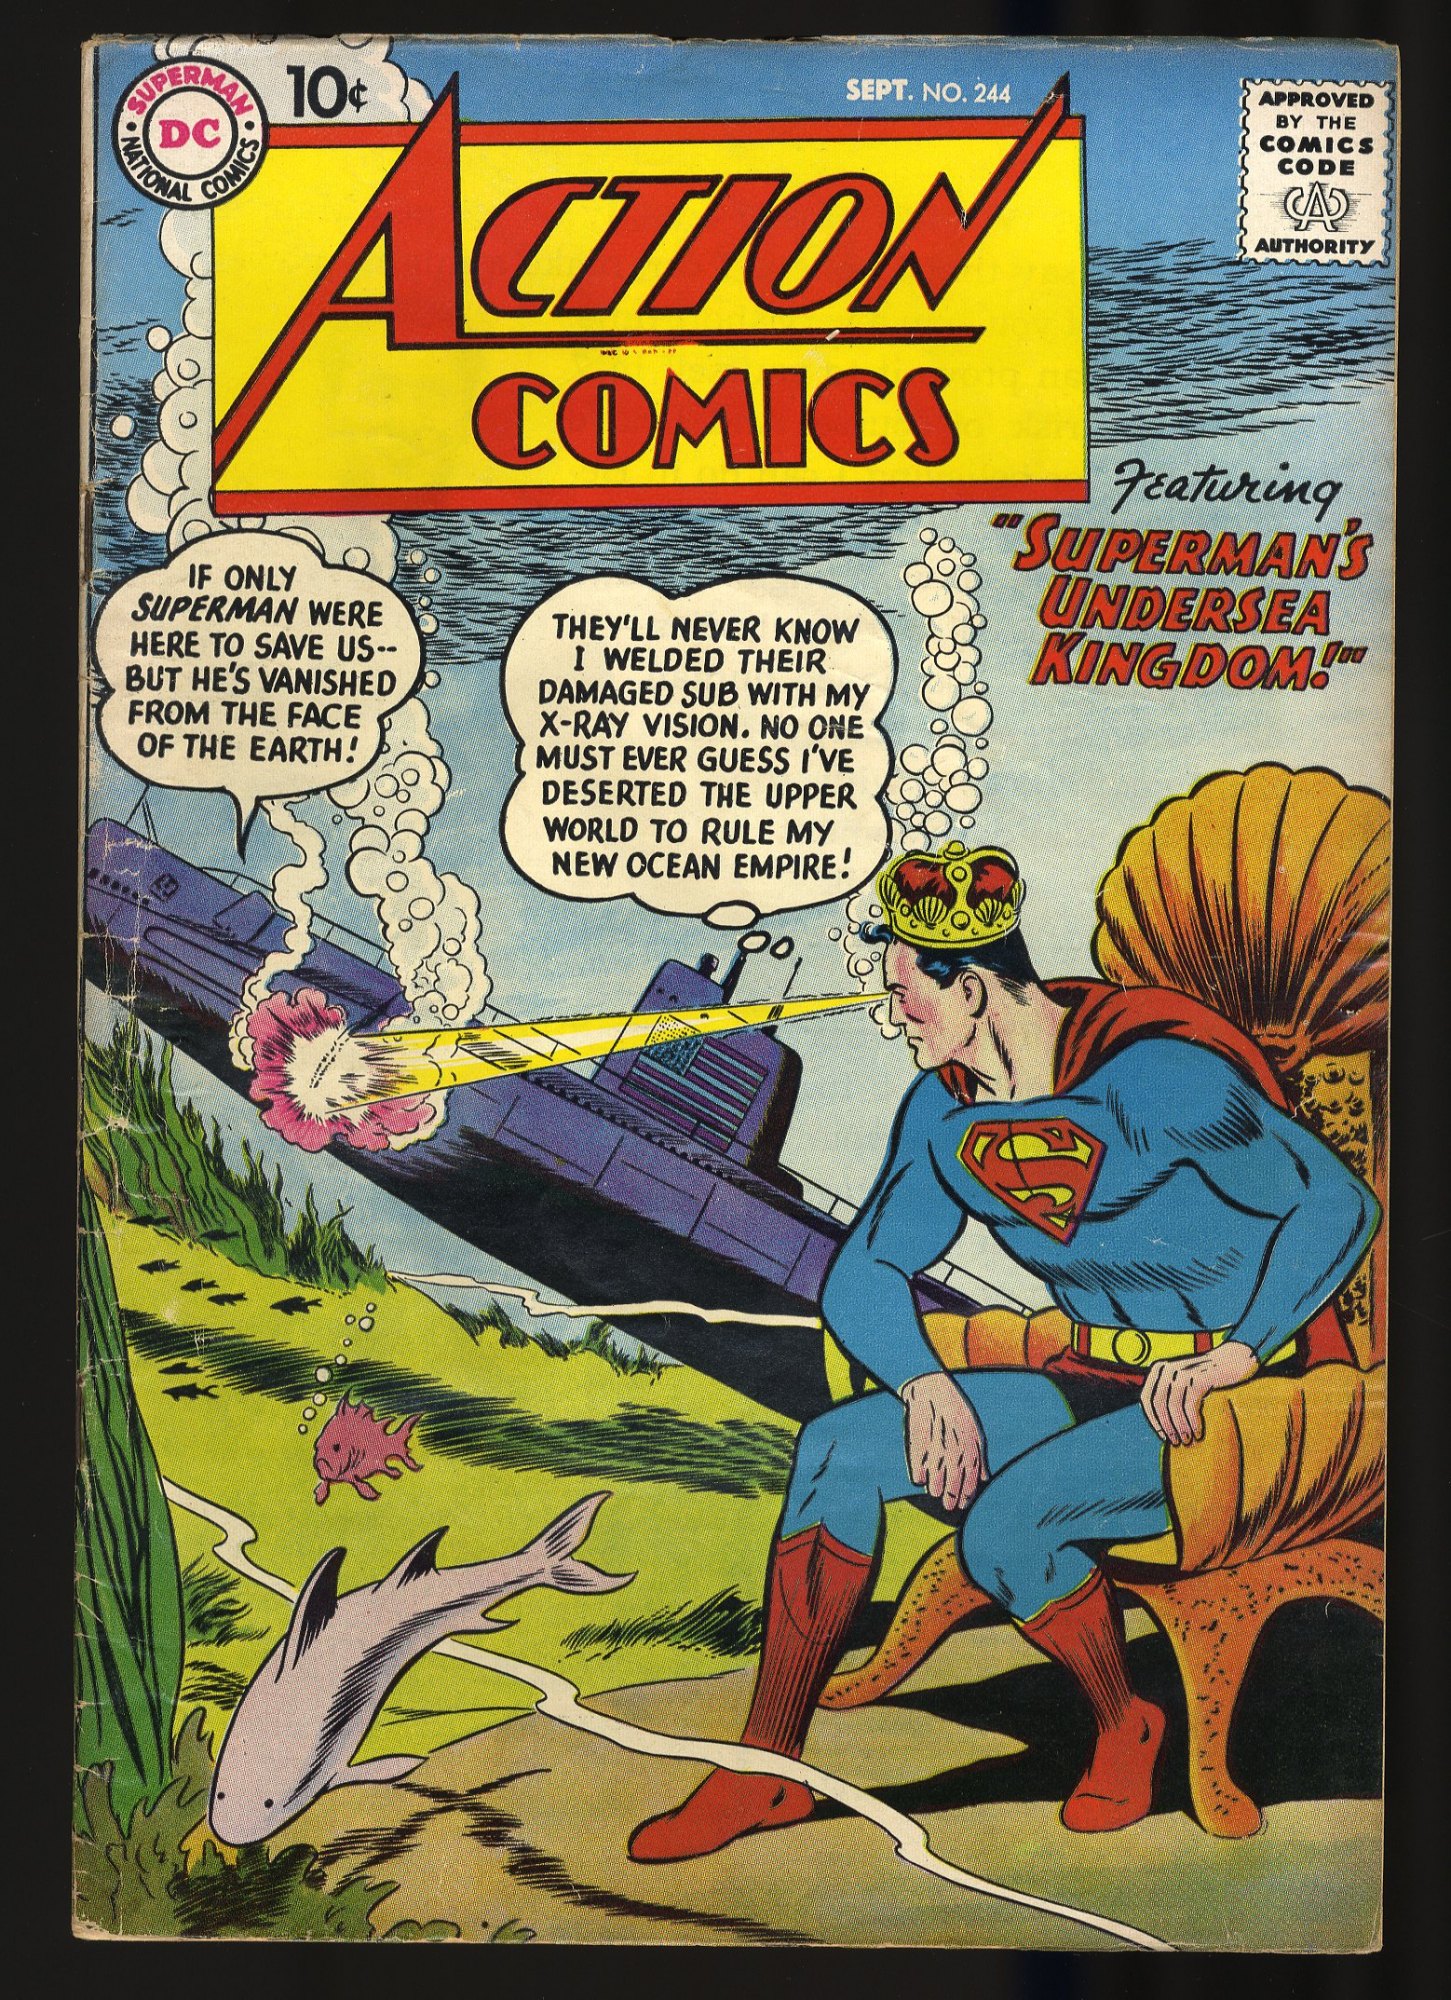 Action Comics #244 VG+ 4.5 DC Comics! Superman's Undersea Kingdom!